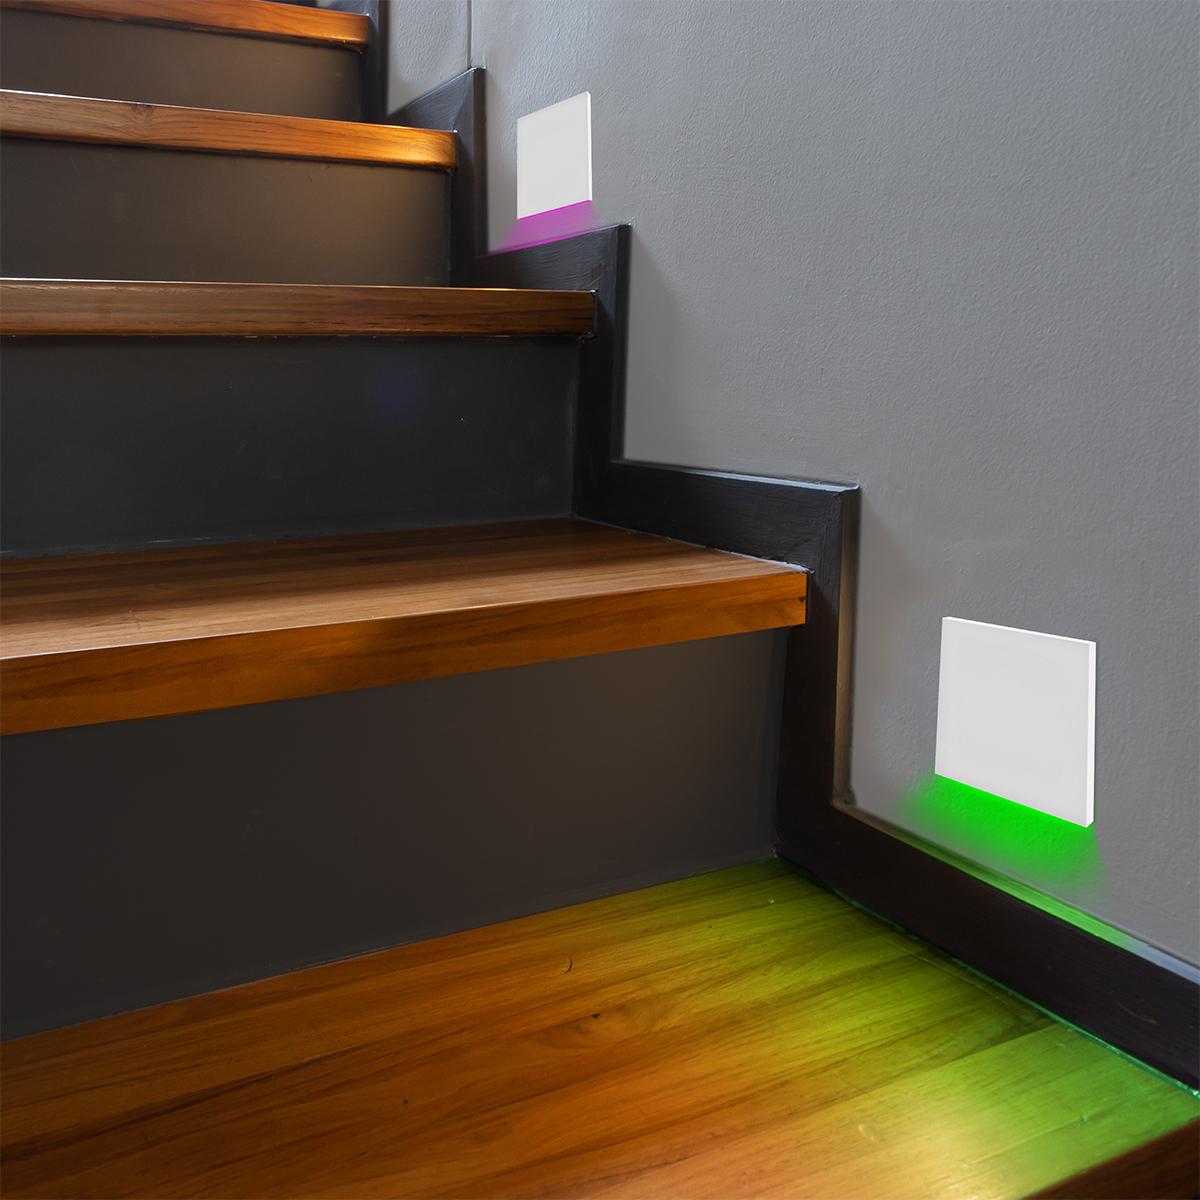 IP44 LED Treppenbeleuchtung 230V Wandeinbauleuchte eckig weiß - Lichtfarbe: RGB Warmweiß 3W